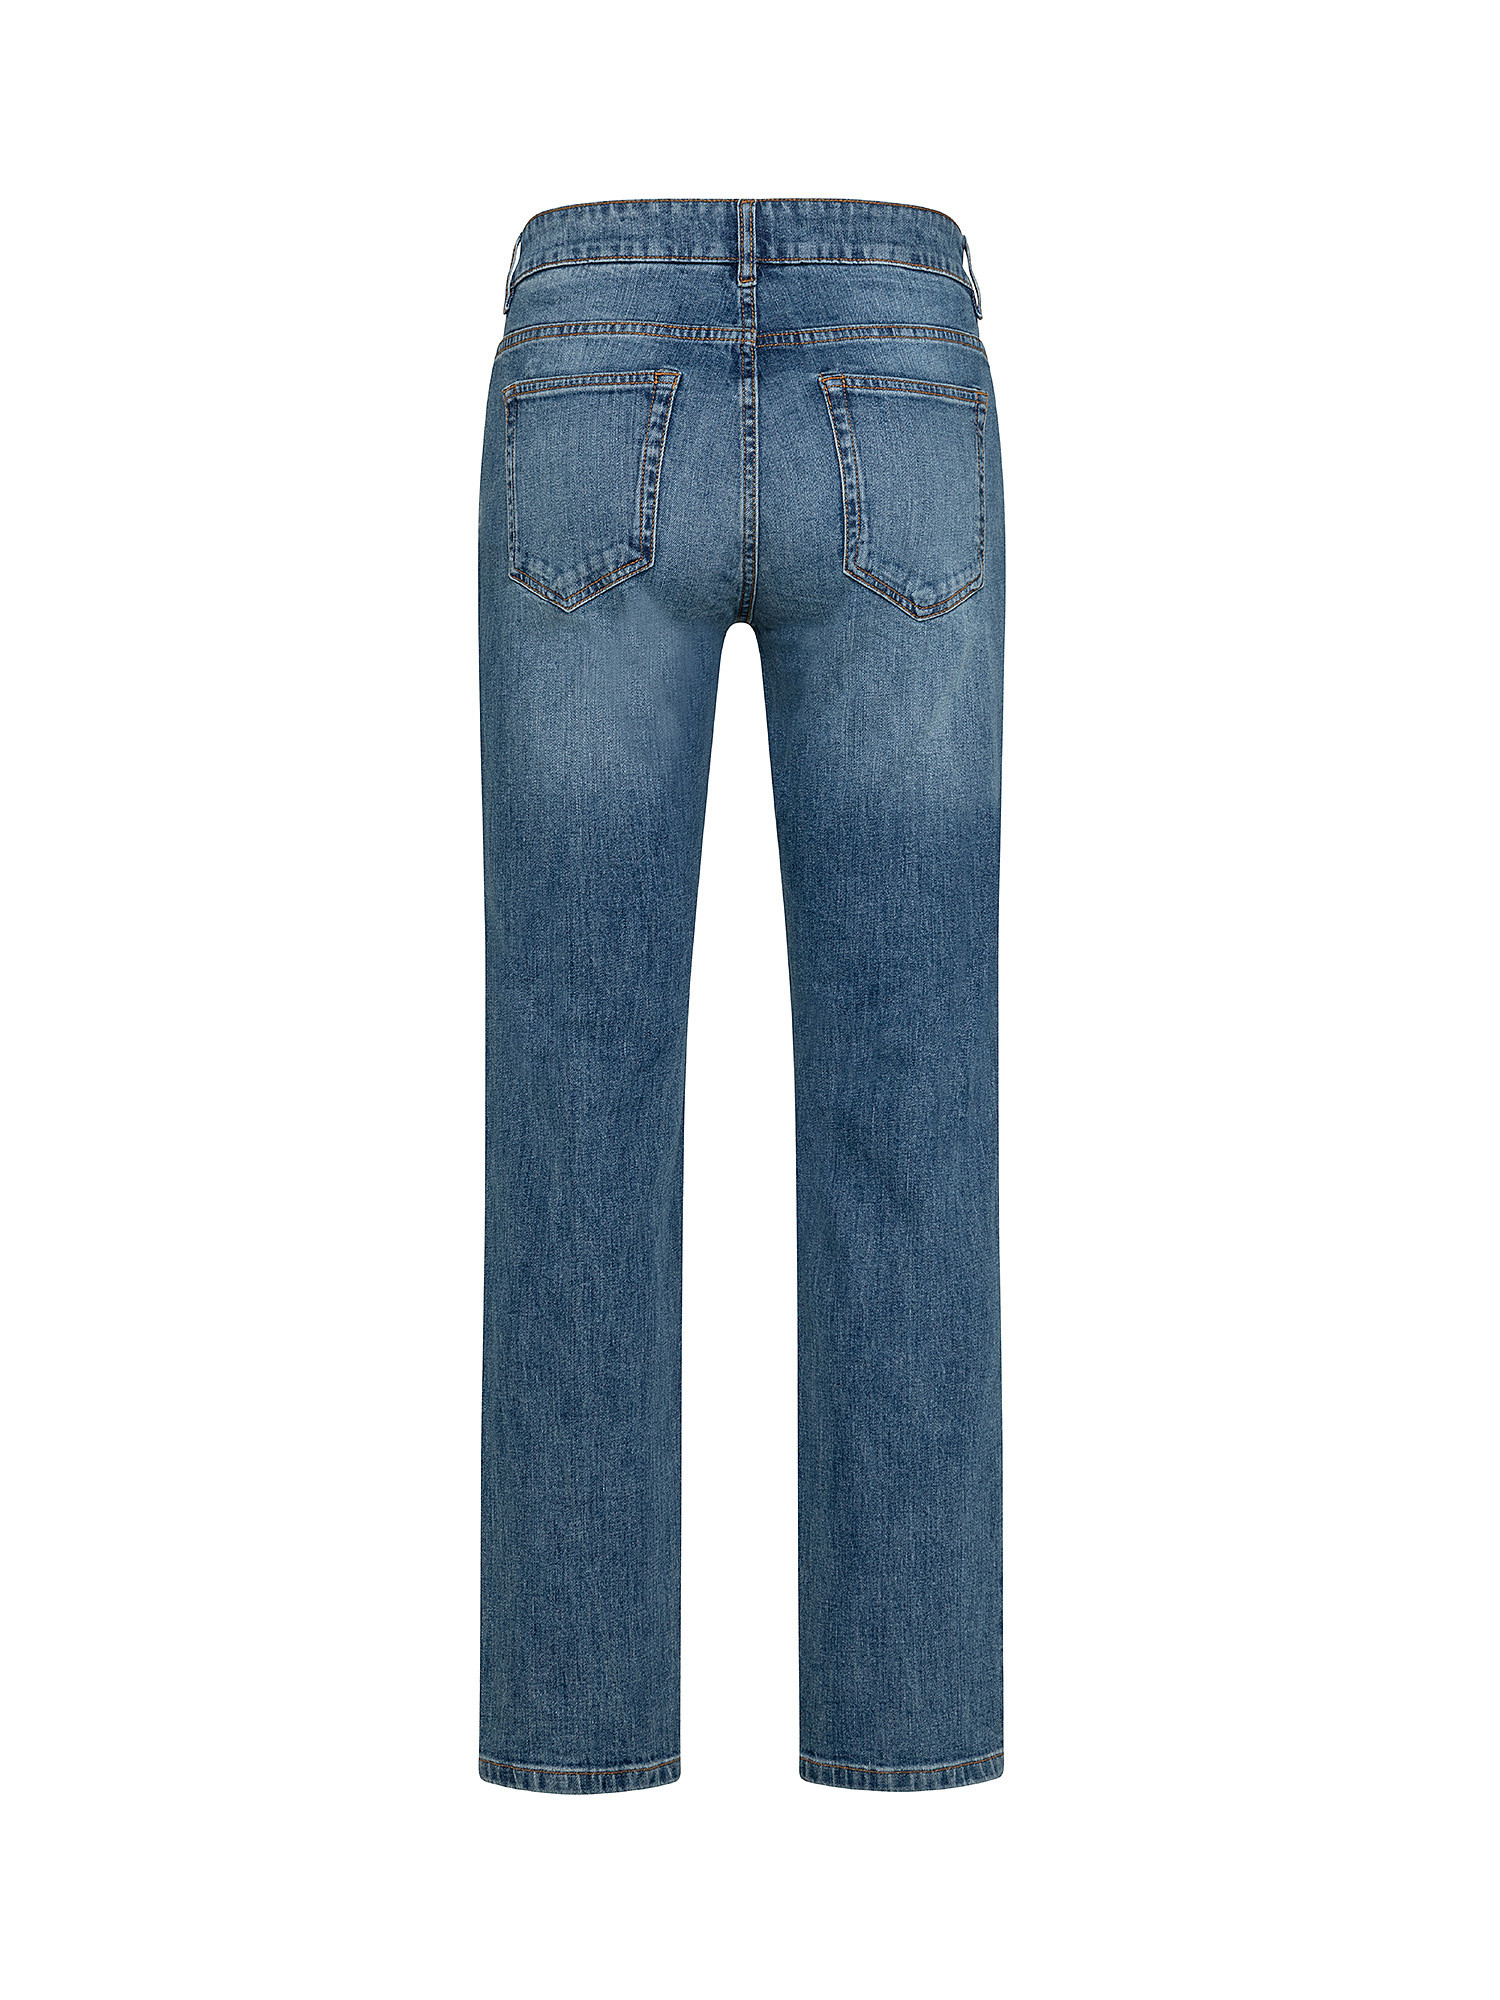 Five pocket jeans, Blue, large image number 1